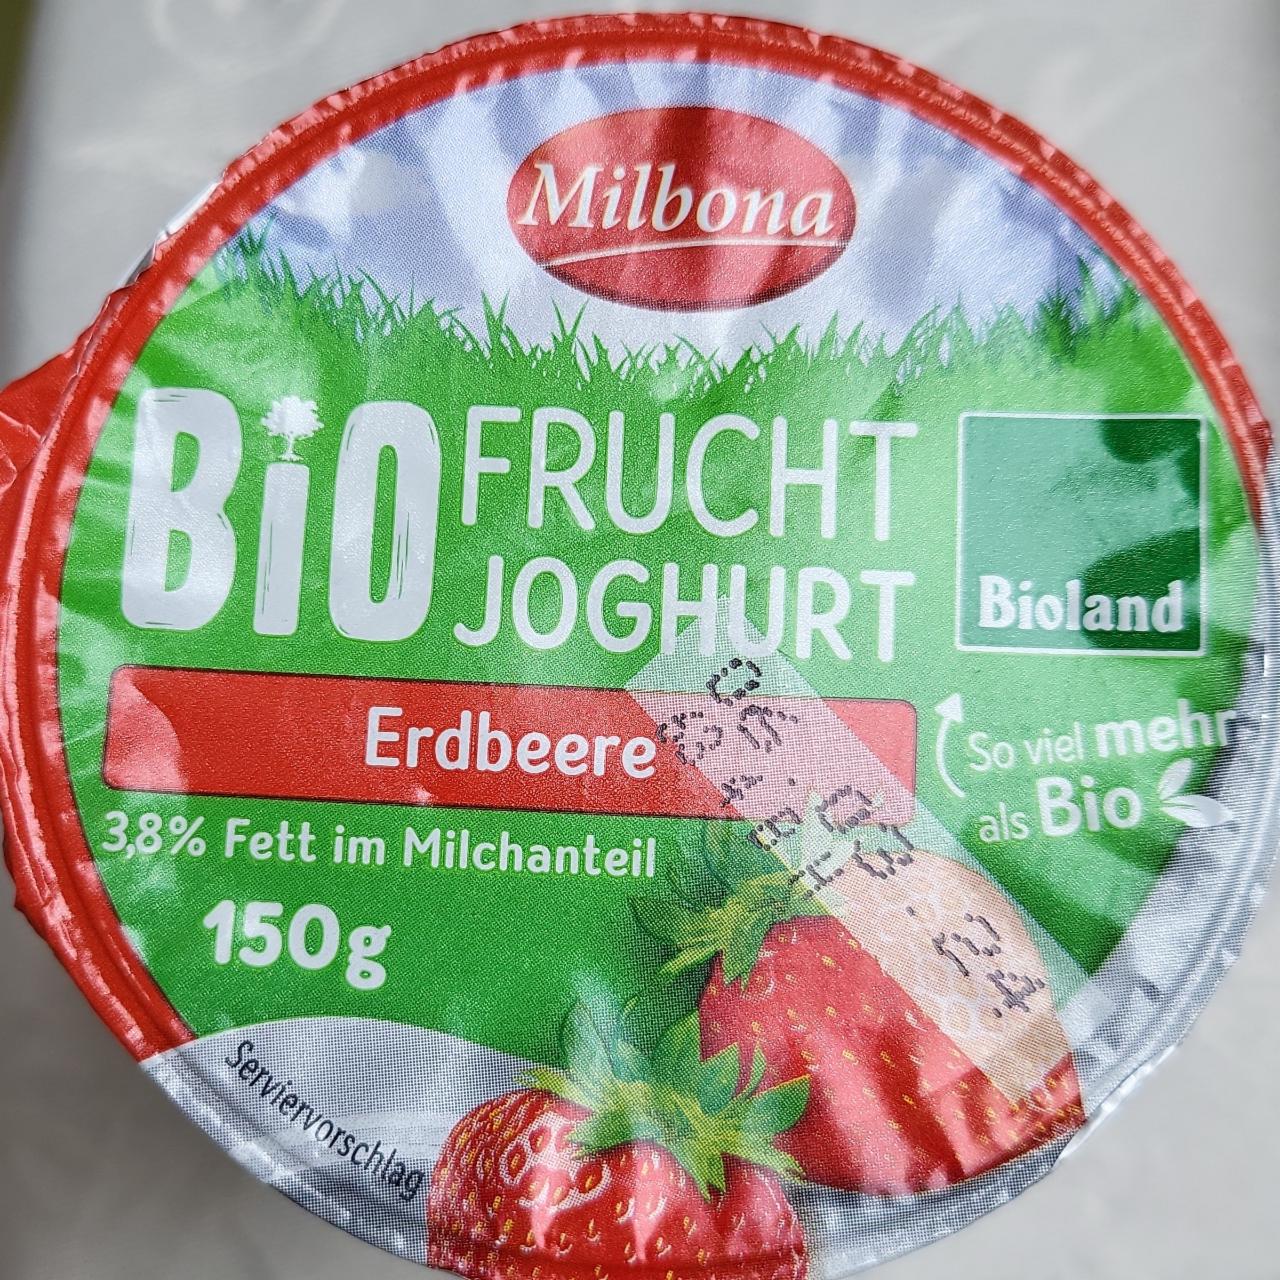 Фото - Bio Frucht joghurt Erdbeere Milbona